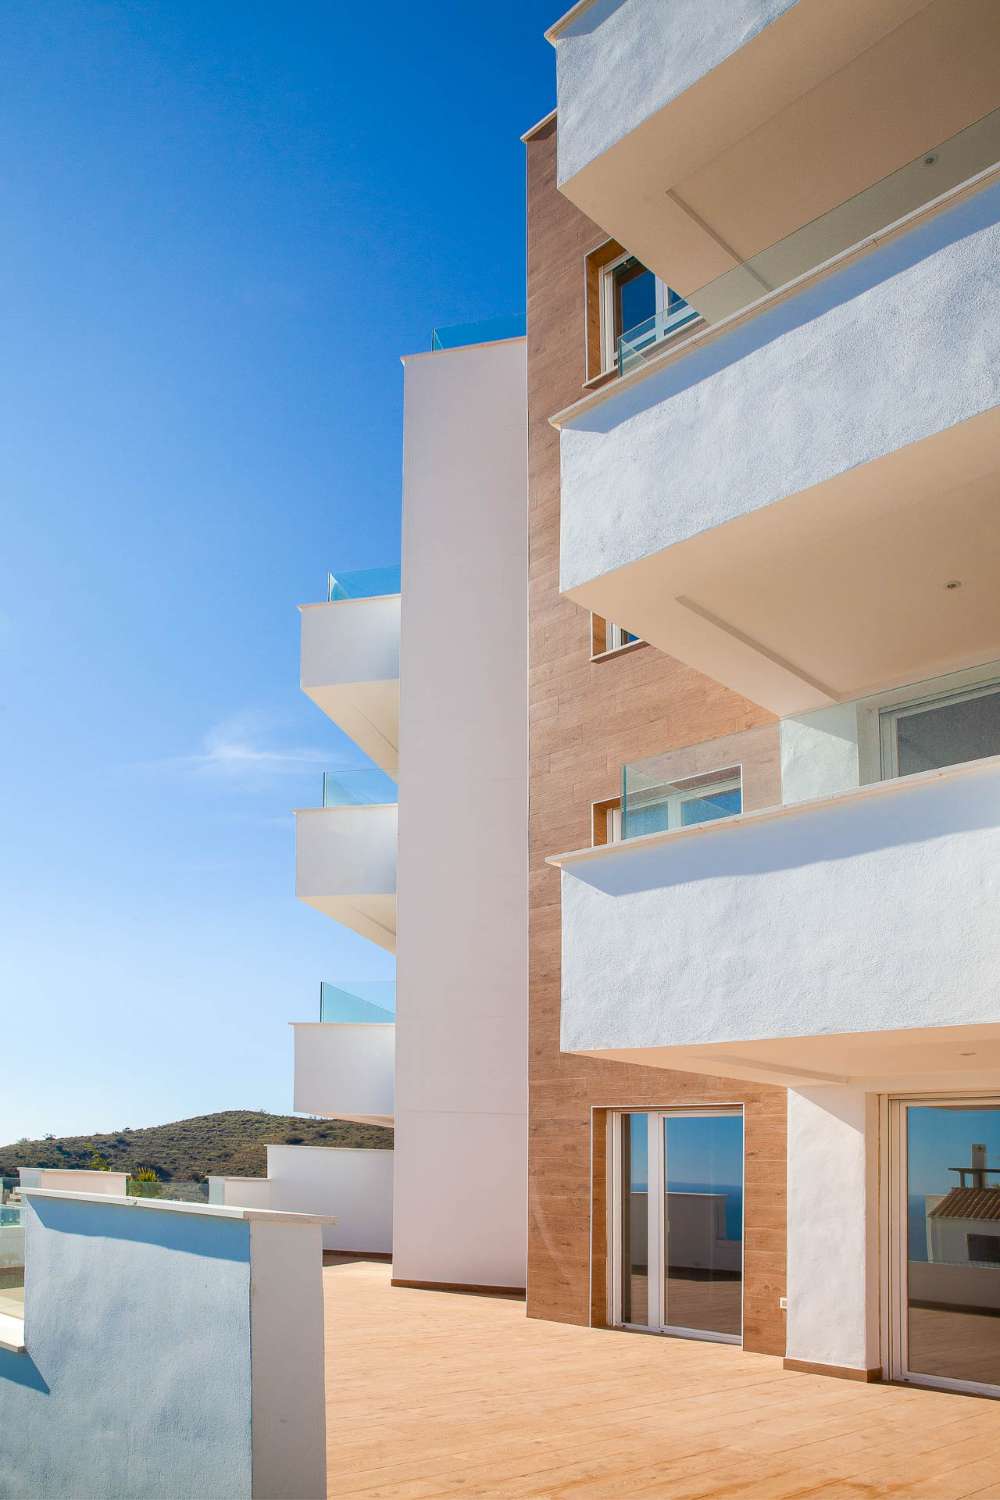 Appartement te koop aan de kust van Torrox met prachtig uitzicht op zee, garage en gemeenschappelijk zwembad